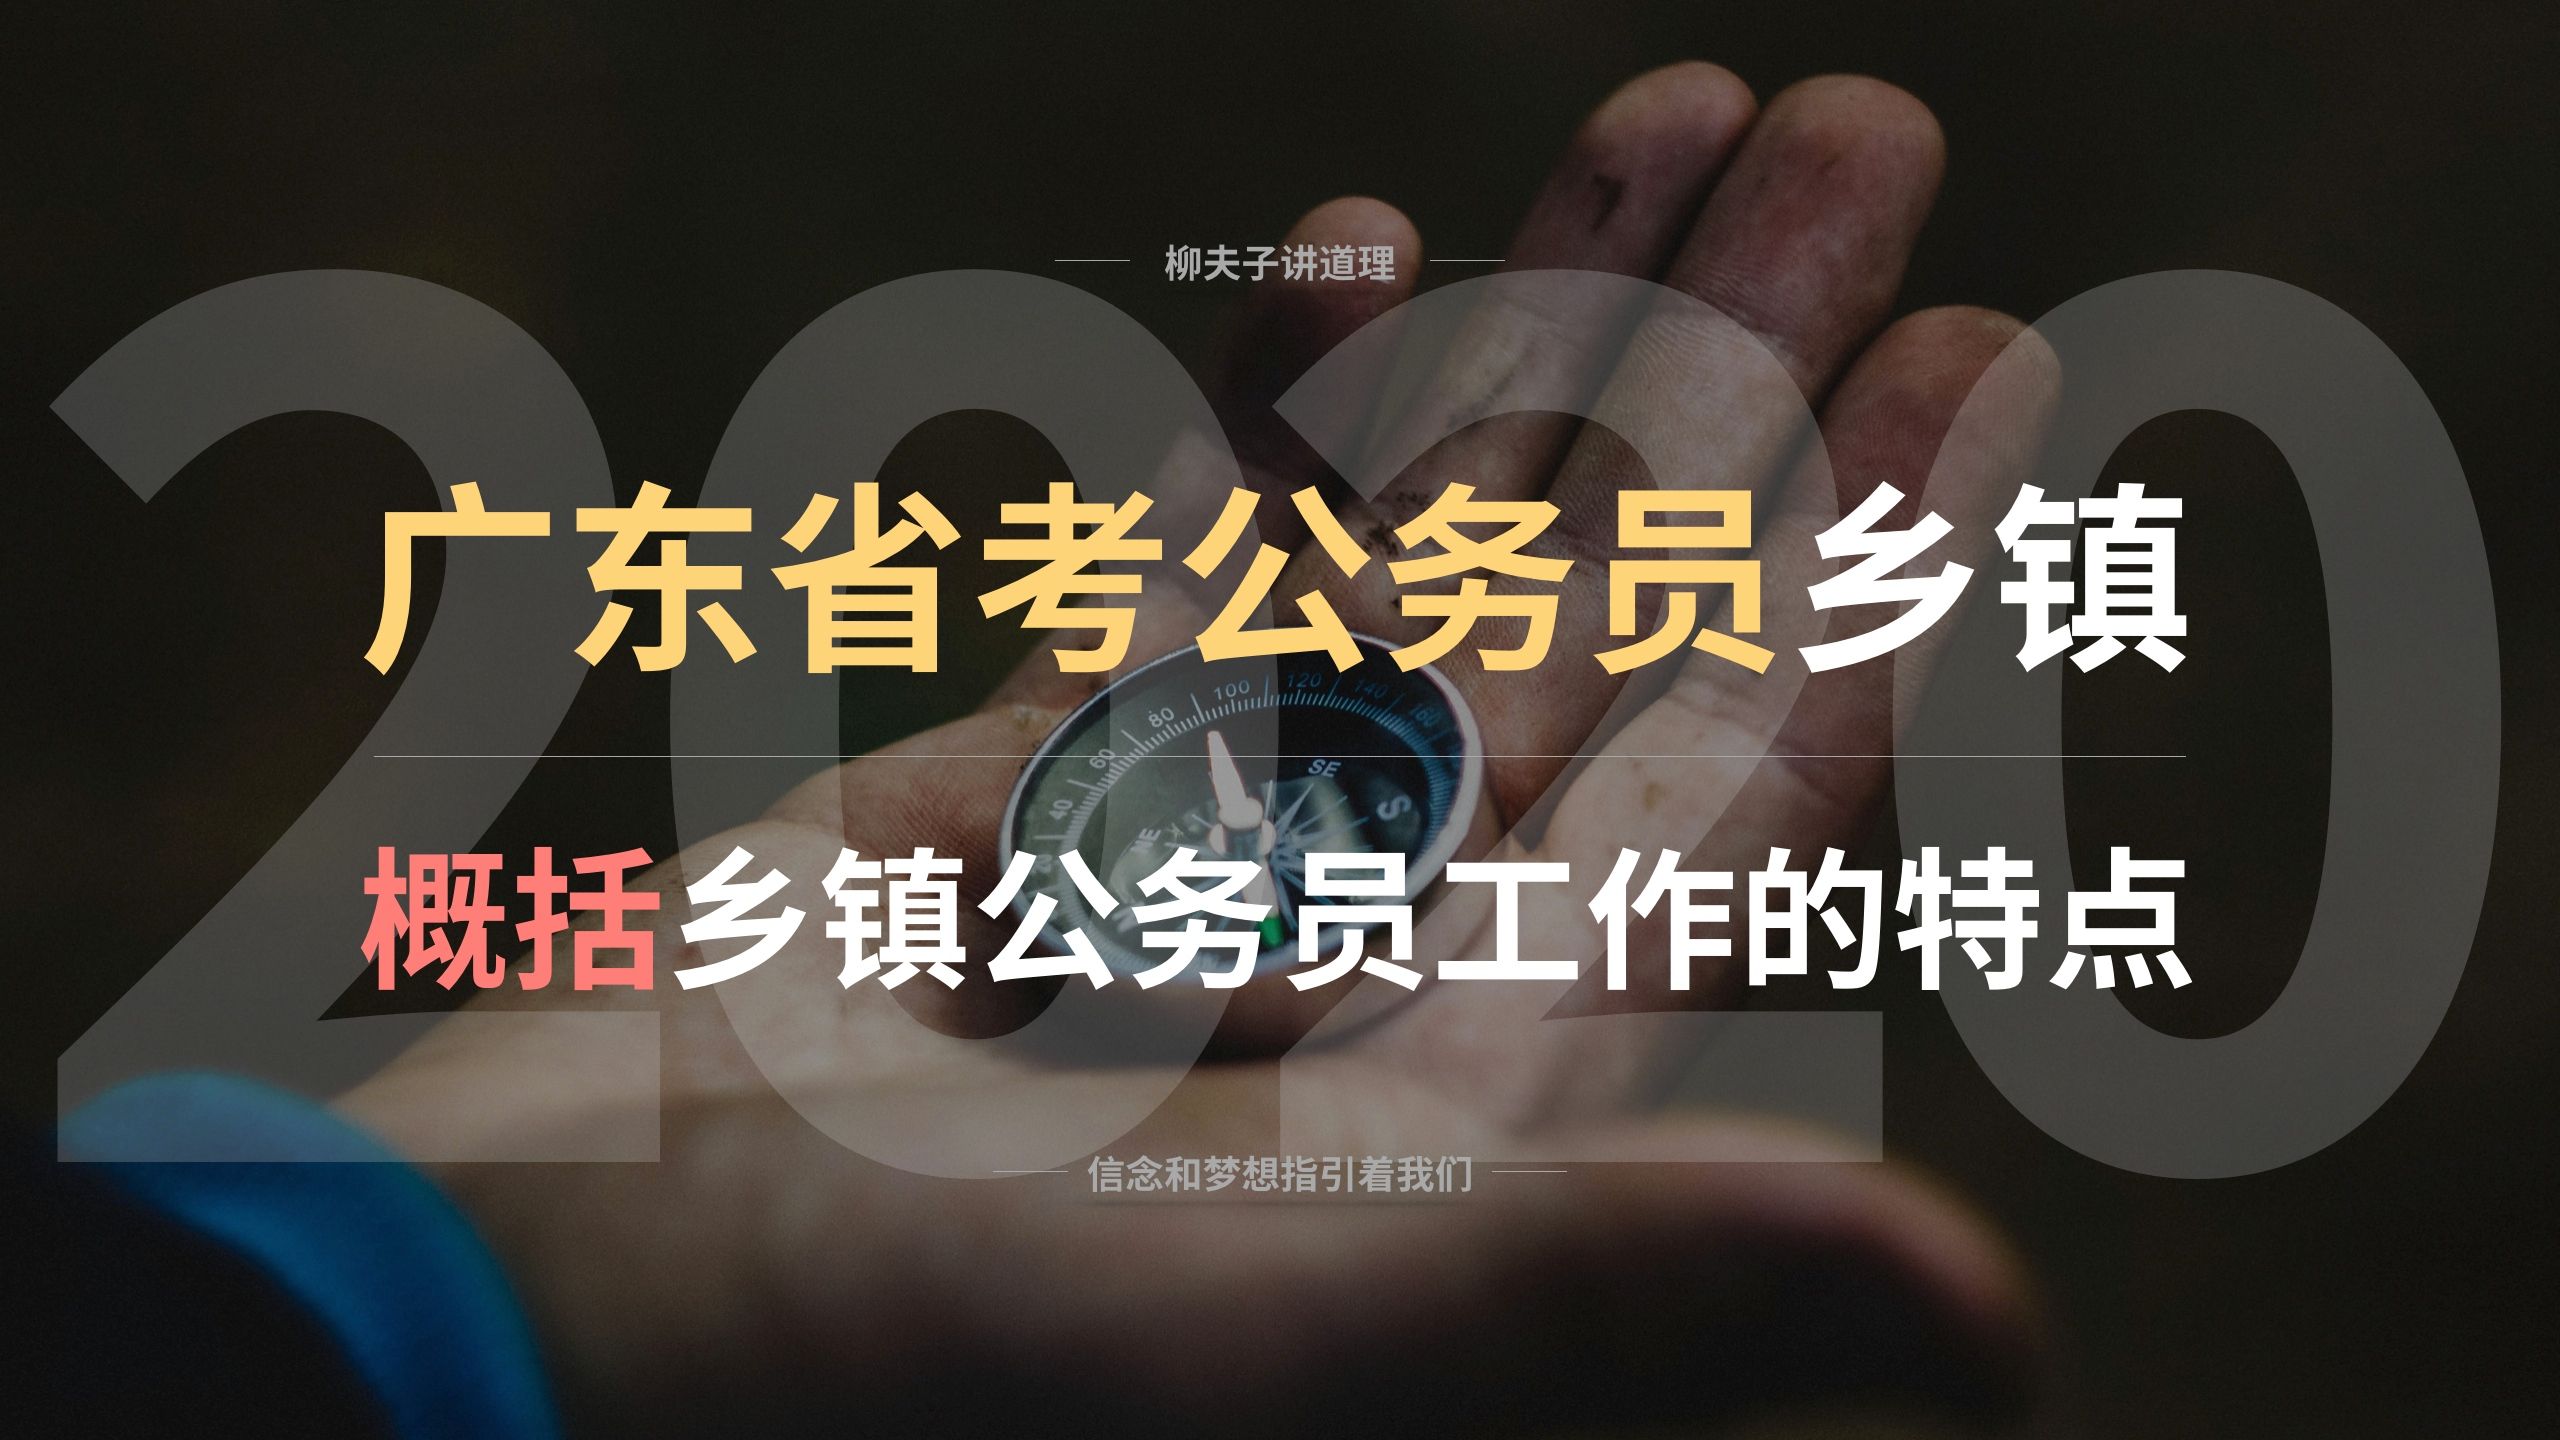 2021年广东省考公务员乡镇级申论解析 简要说明乡村新闻官的推动作用 - 哔哩哔哩